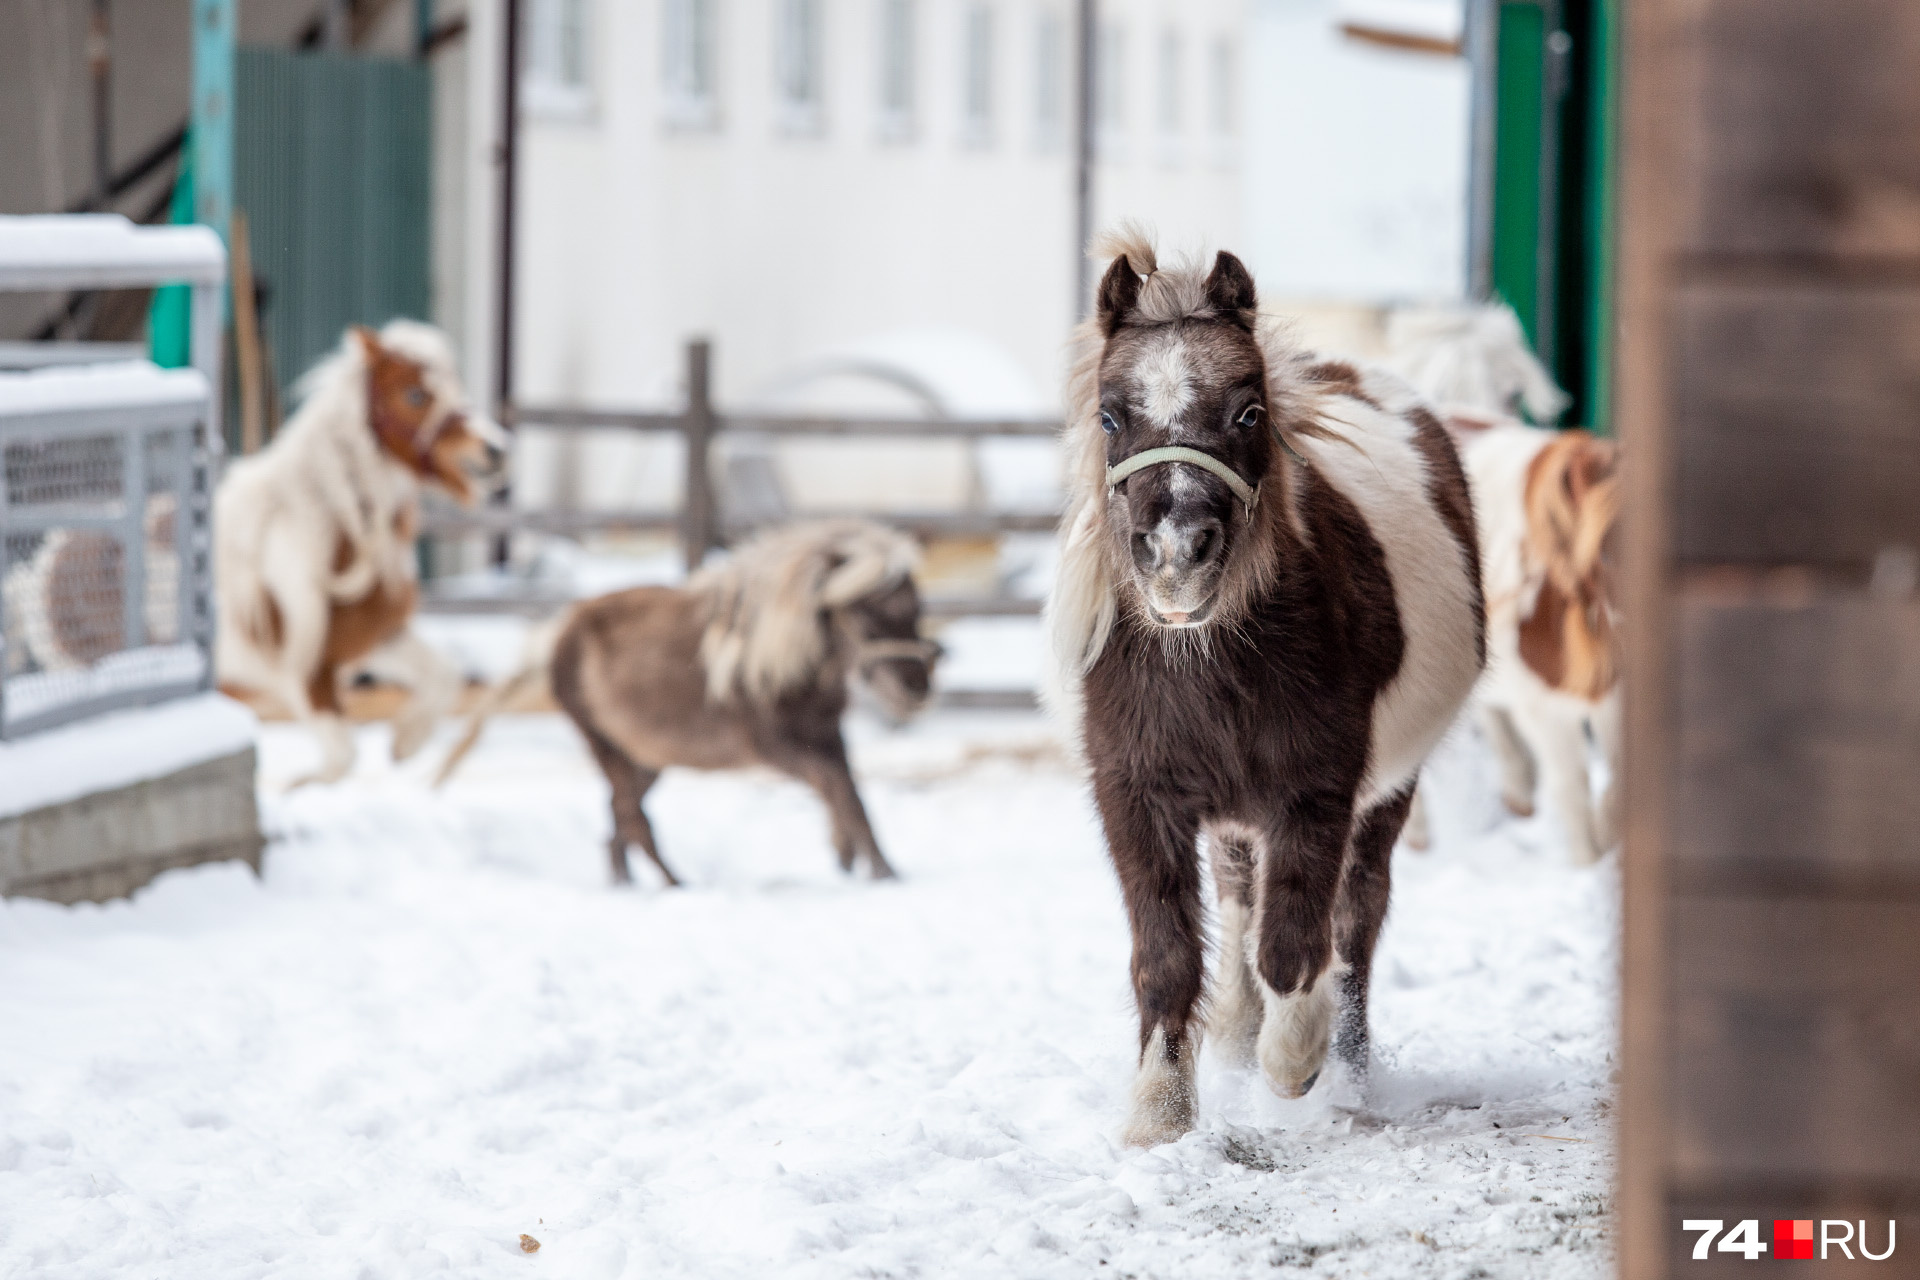 Репортаж с челябинской пони-фермы, где воспитывают самых маленьких лошадей  1 января 2020 г - 1 января 2020 - 74.ru